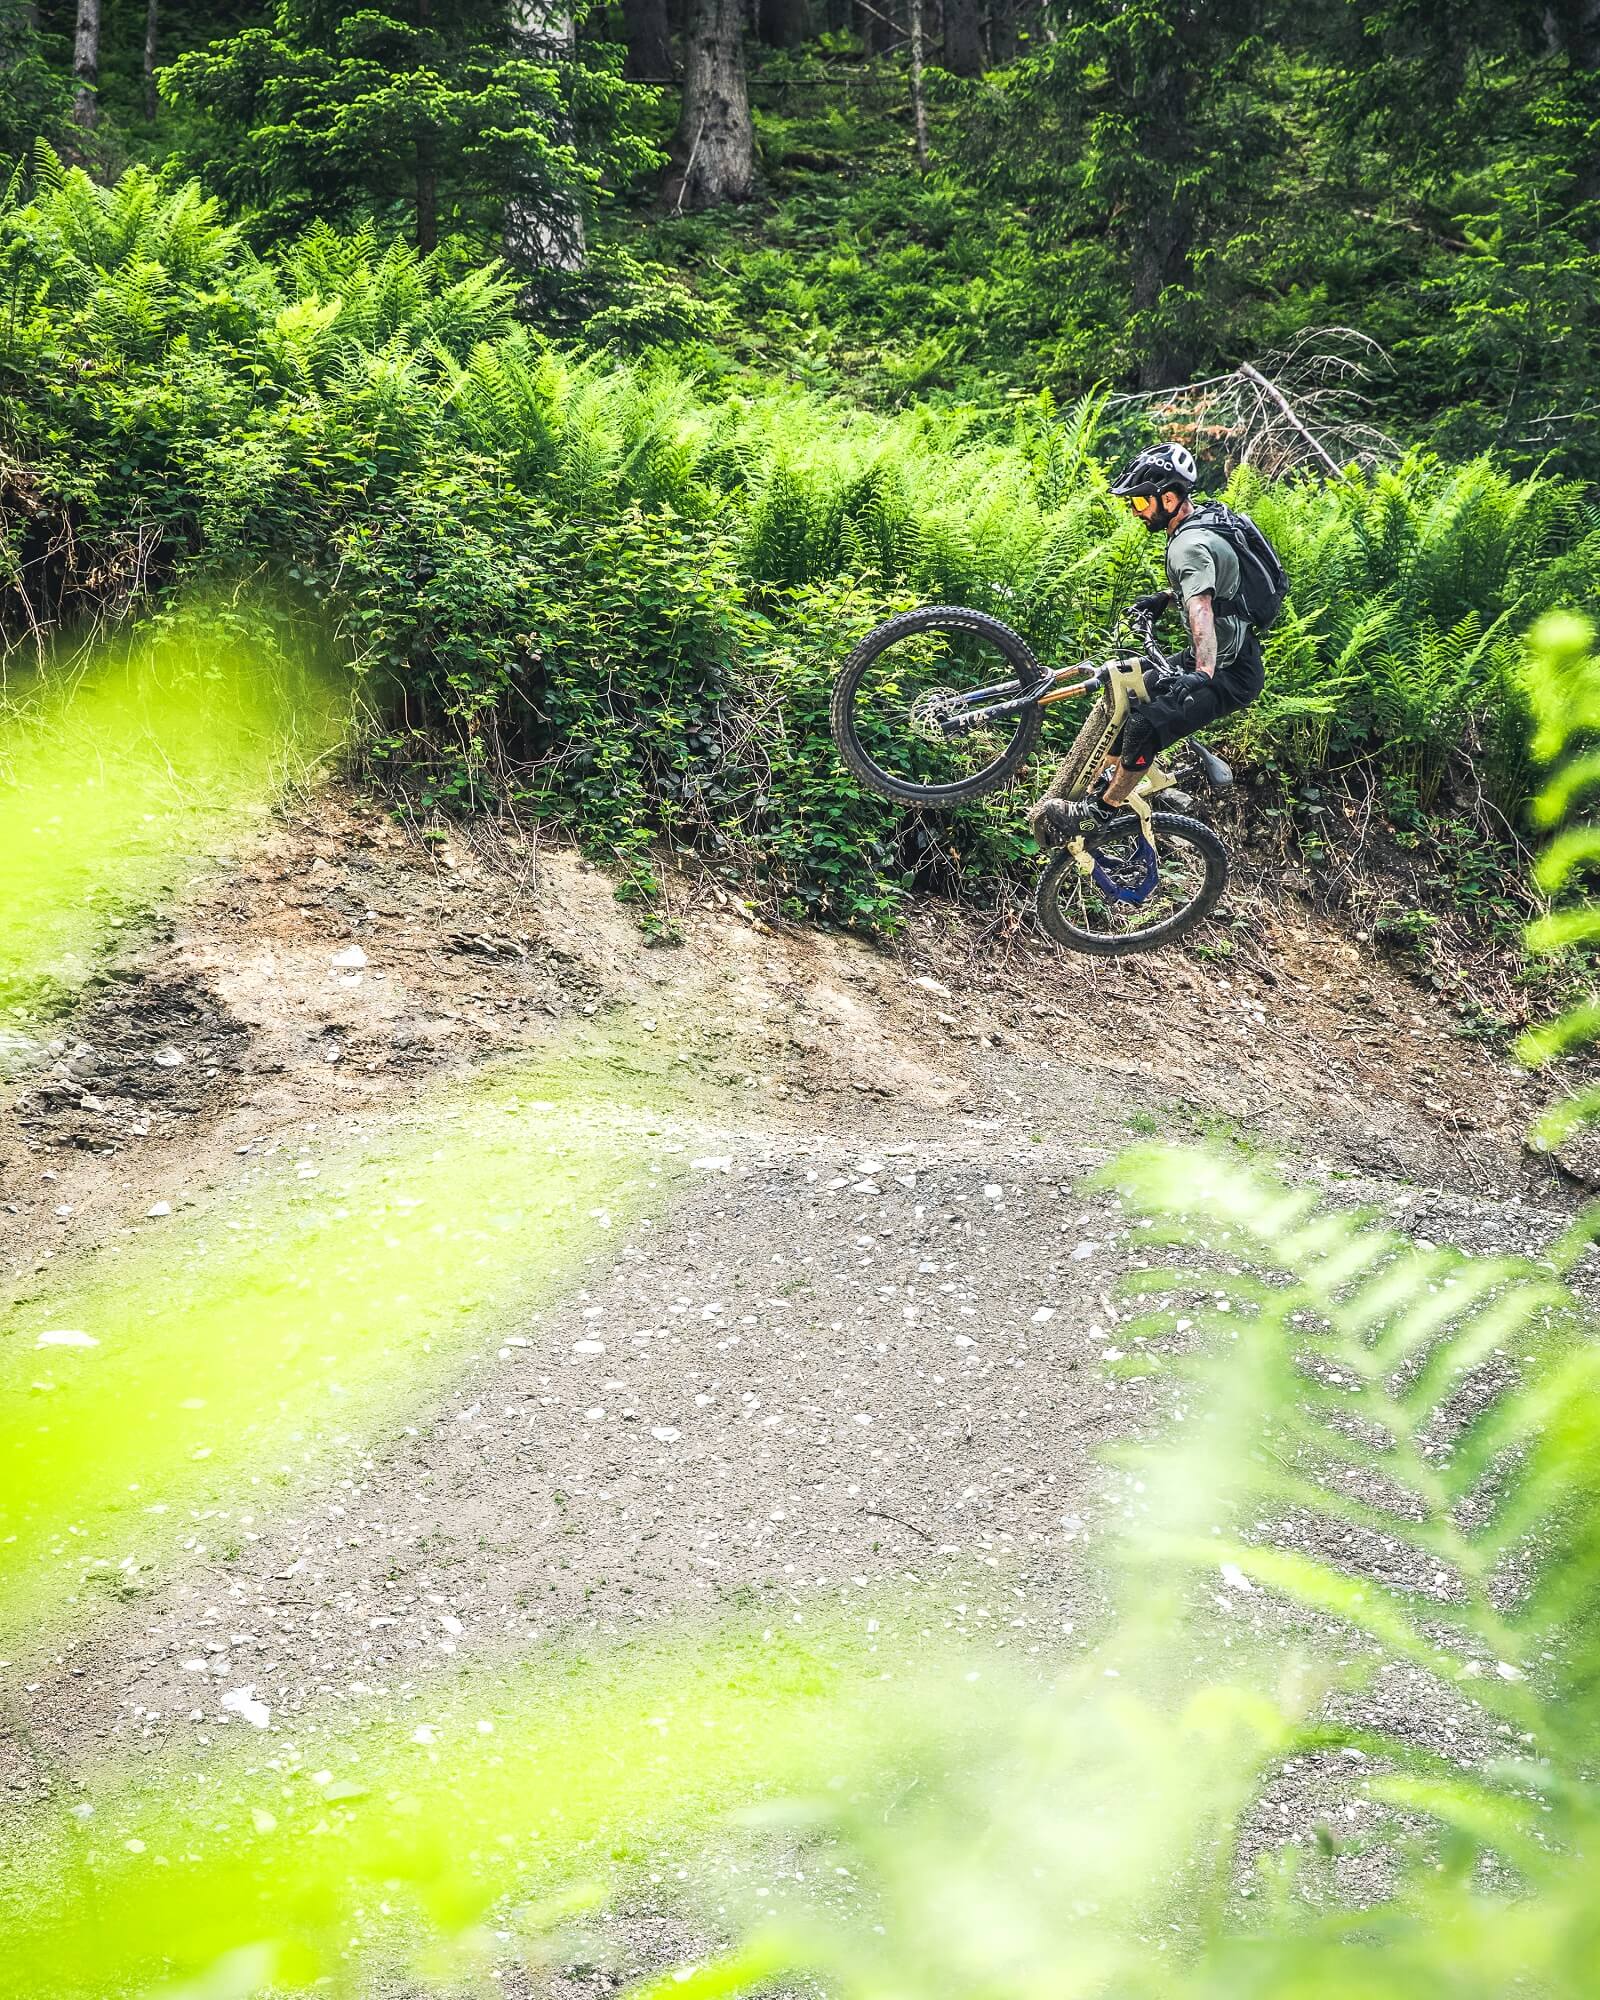 Andrea Garibbo, héroe de Haibike, salta con su bicicleta en un bosque